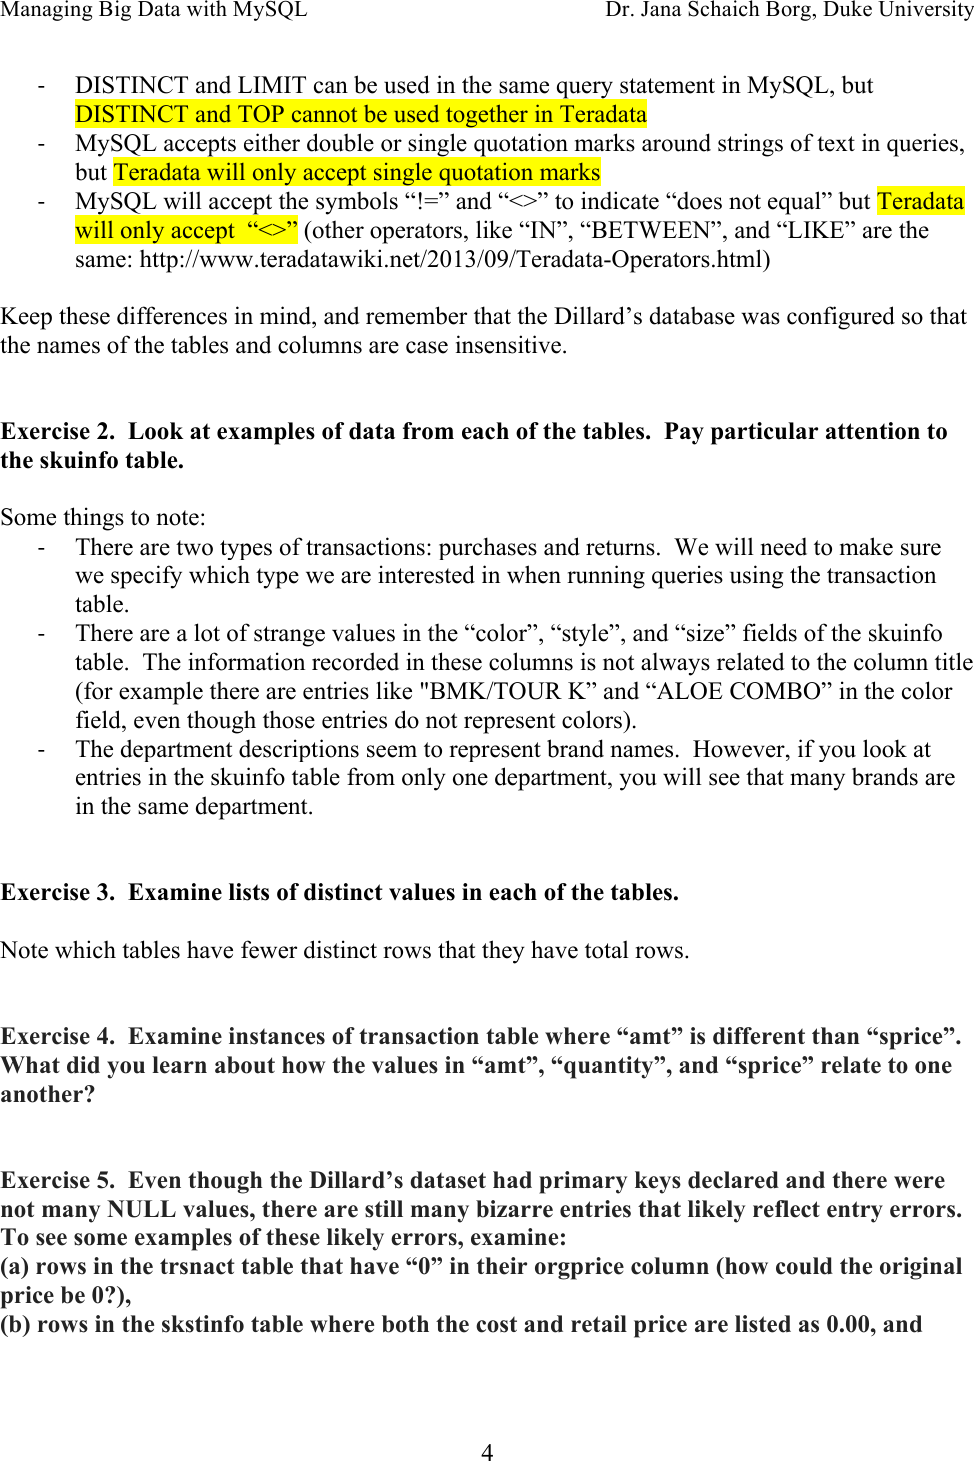 Page 4 of 6 - Week-2-Dillard S-Analysis-Guide-Teradata-exercise